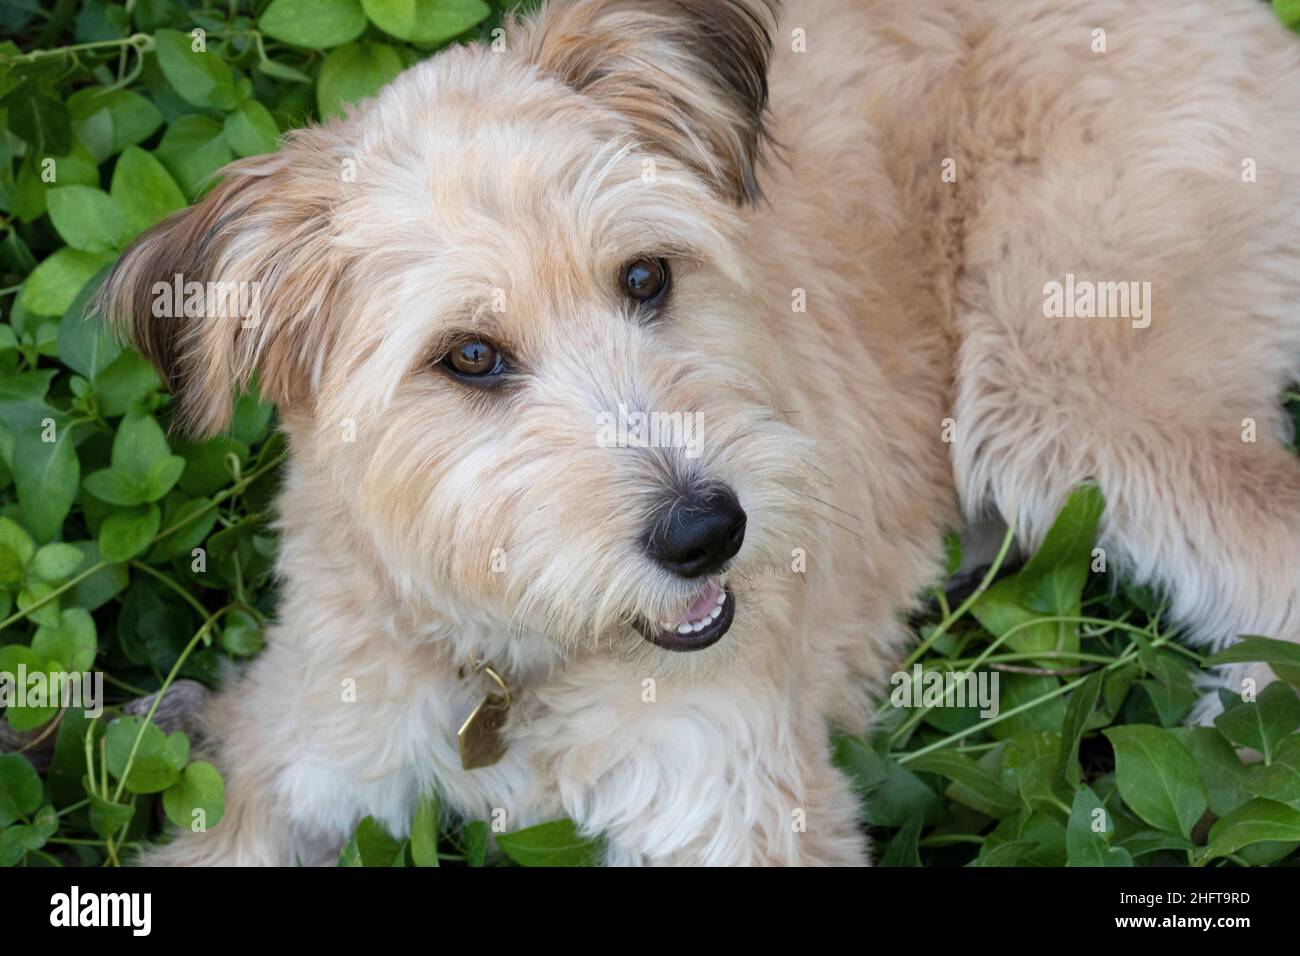 Mixed-breed dog, looking at camera Stock Photo